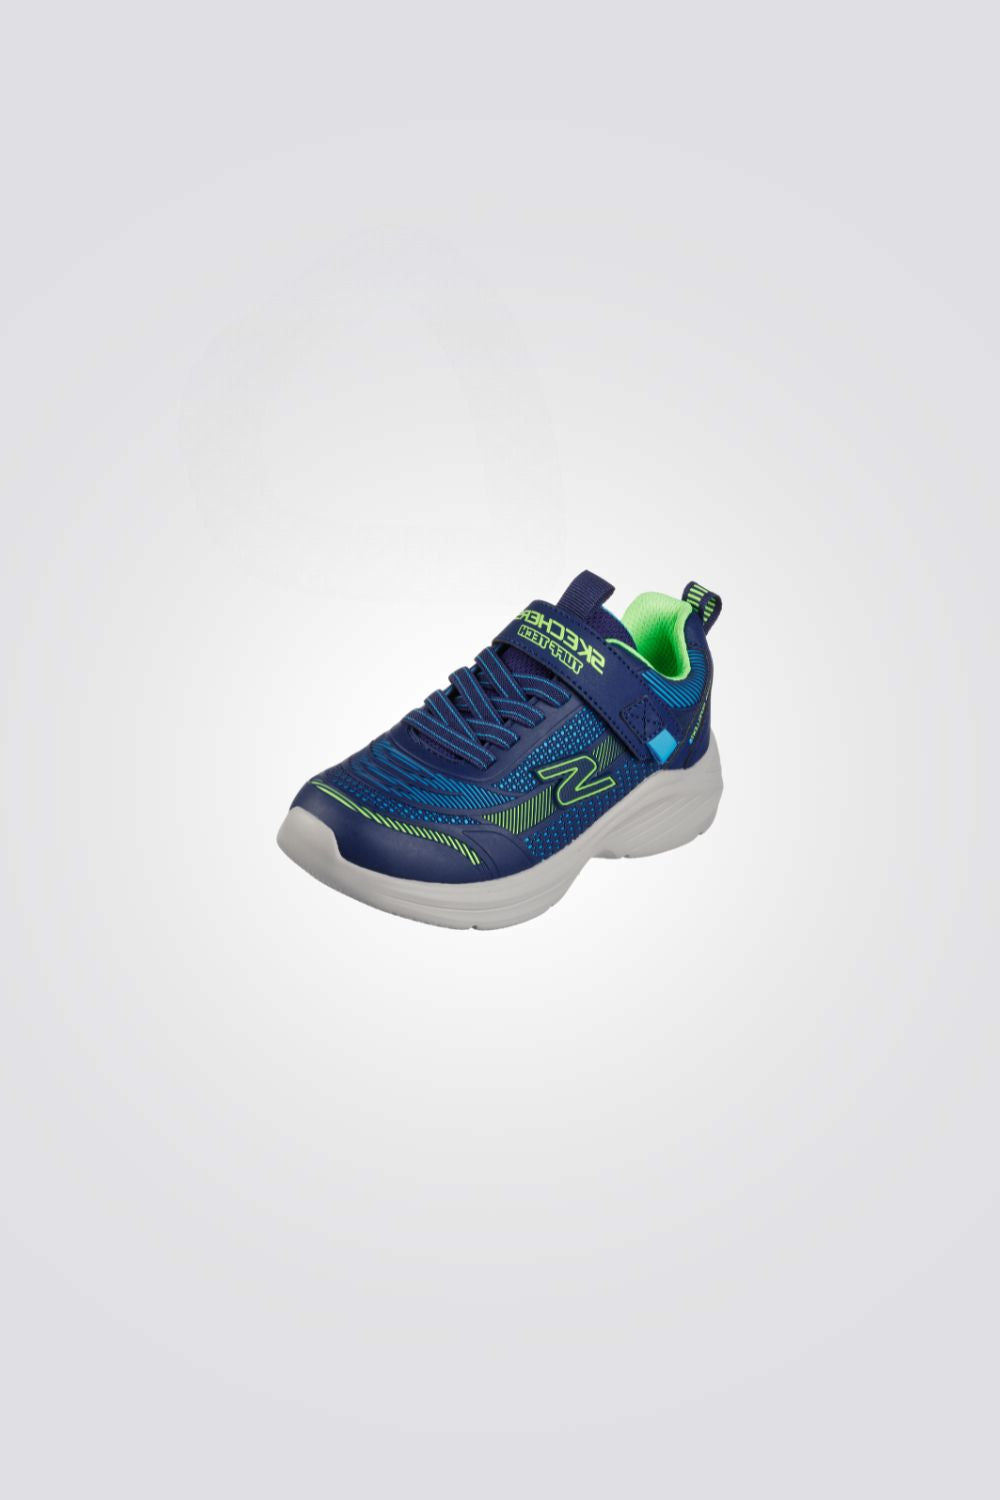 נעלי ספורט לילדים Gore & Strap Sneaker W Upper בצבע כחול וירוק